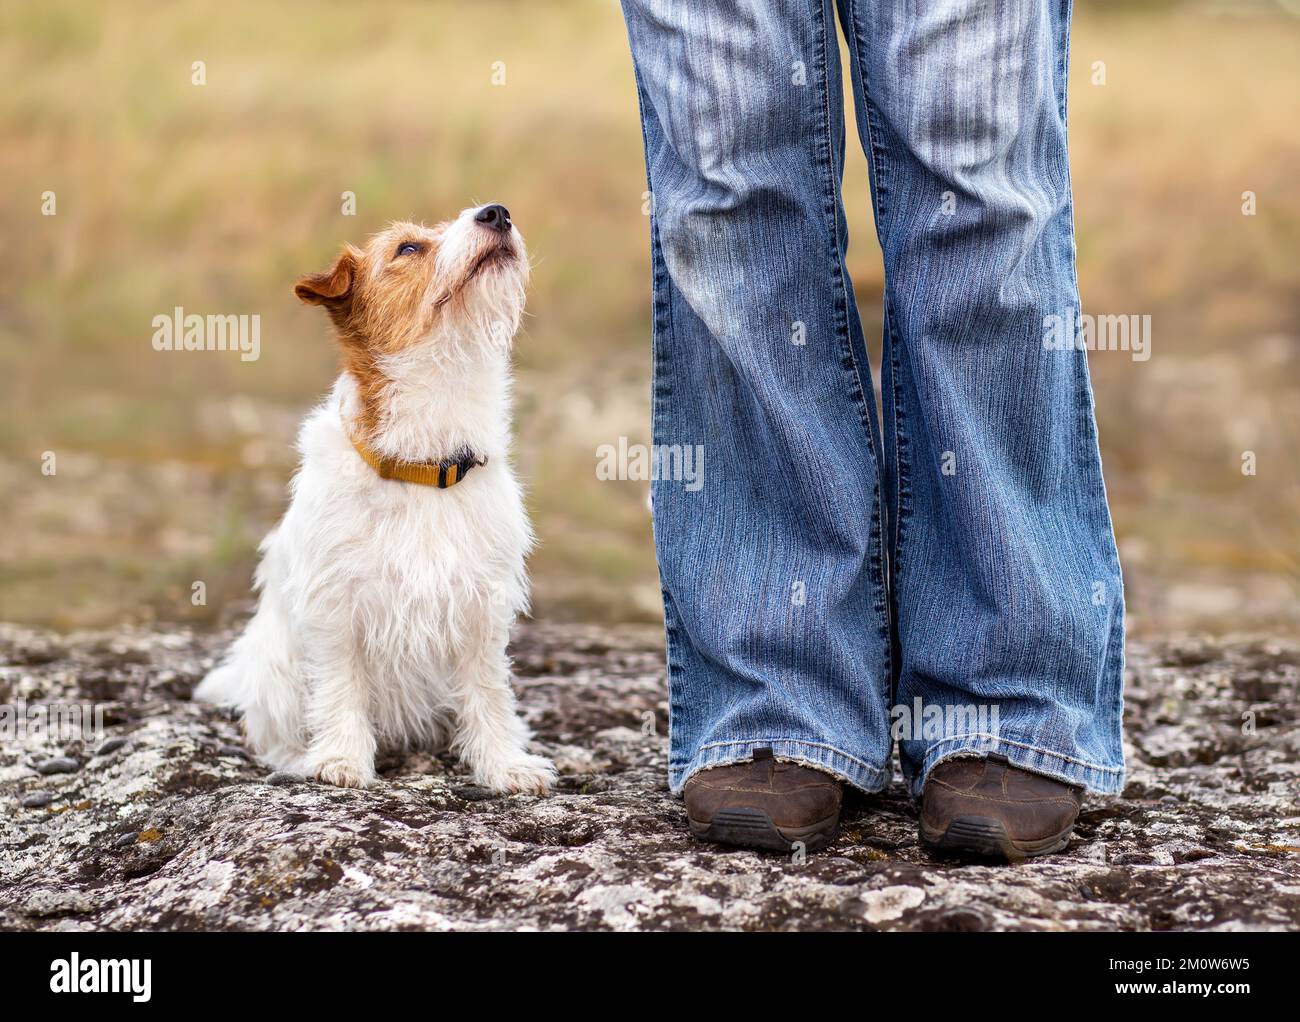 Süßer, glücklicher kleiner Hund, der auf ihren Trainer-Besitzer schaut. Hündchens Gehorsamstraining im Freien. Liebe, Freundschaft. Stockfoto